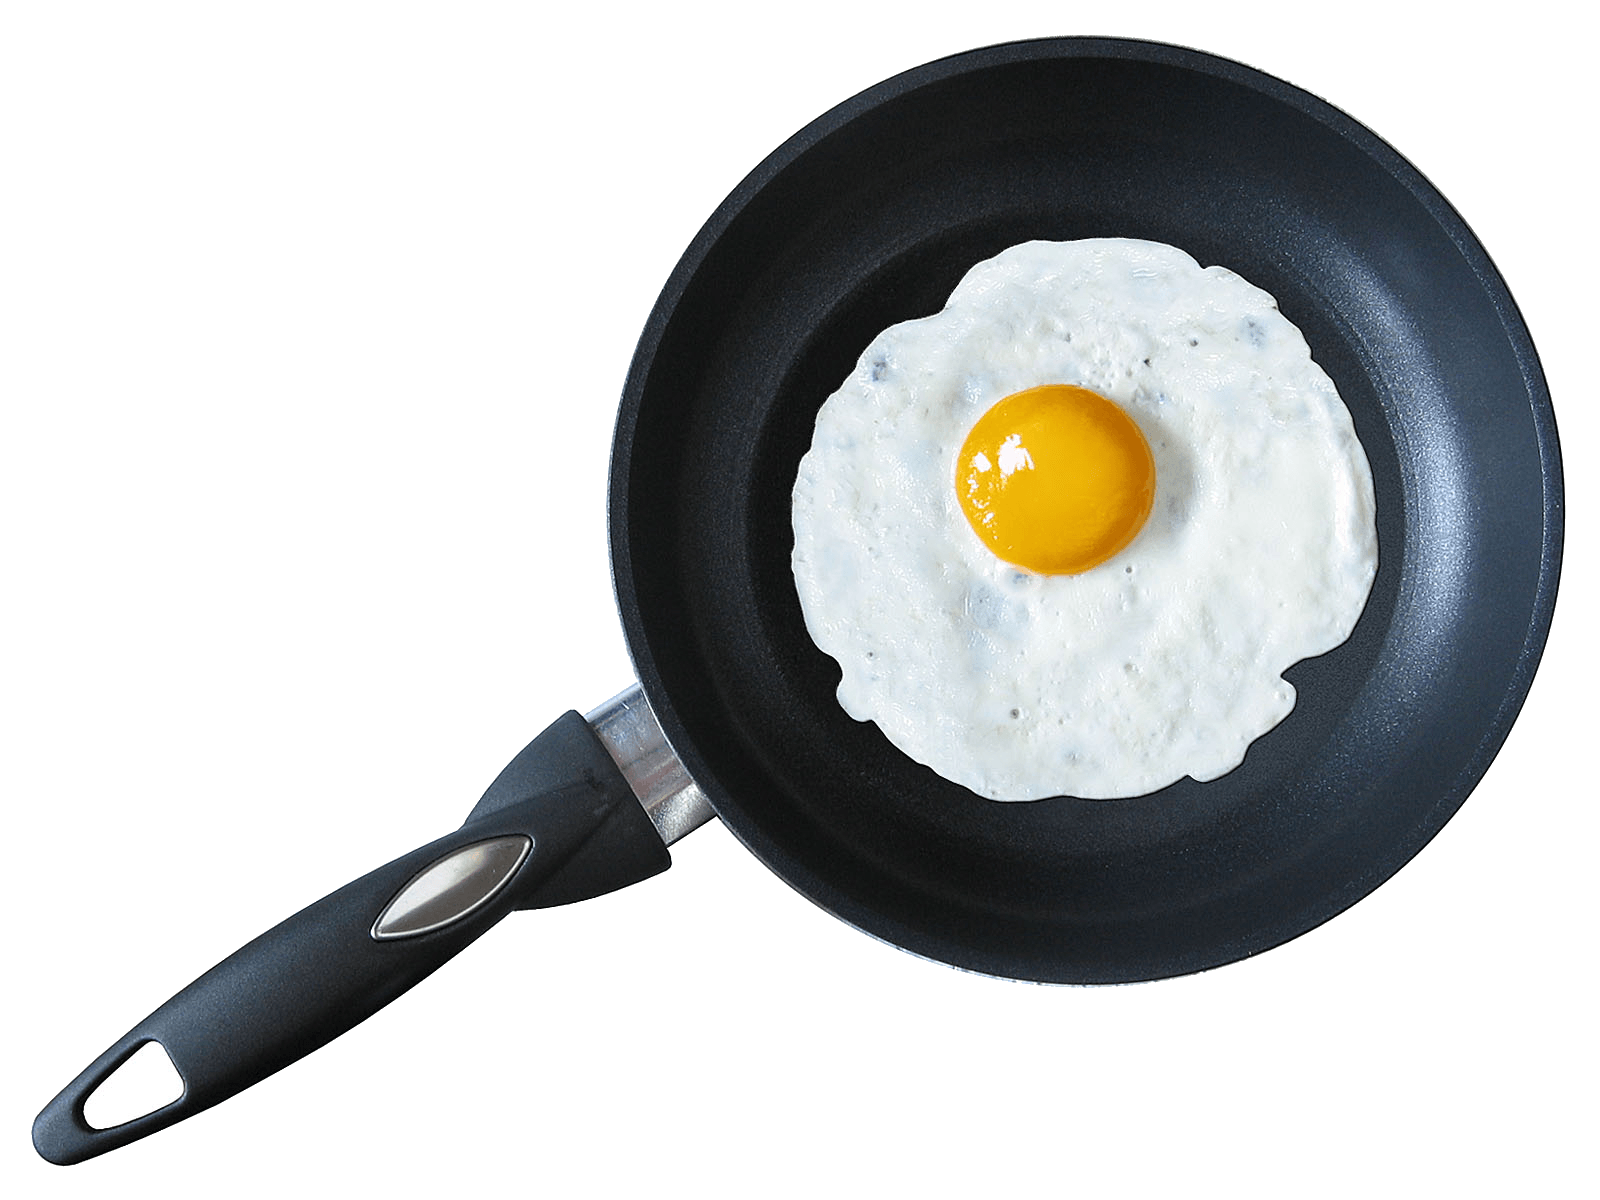 Setengah telur goreng Gambar Transparan